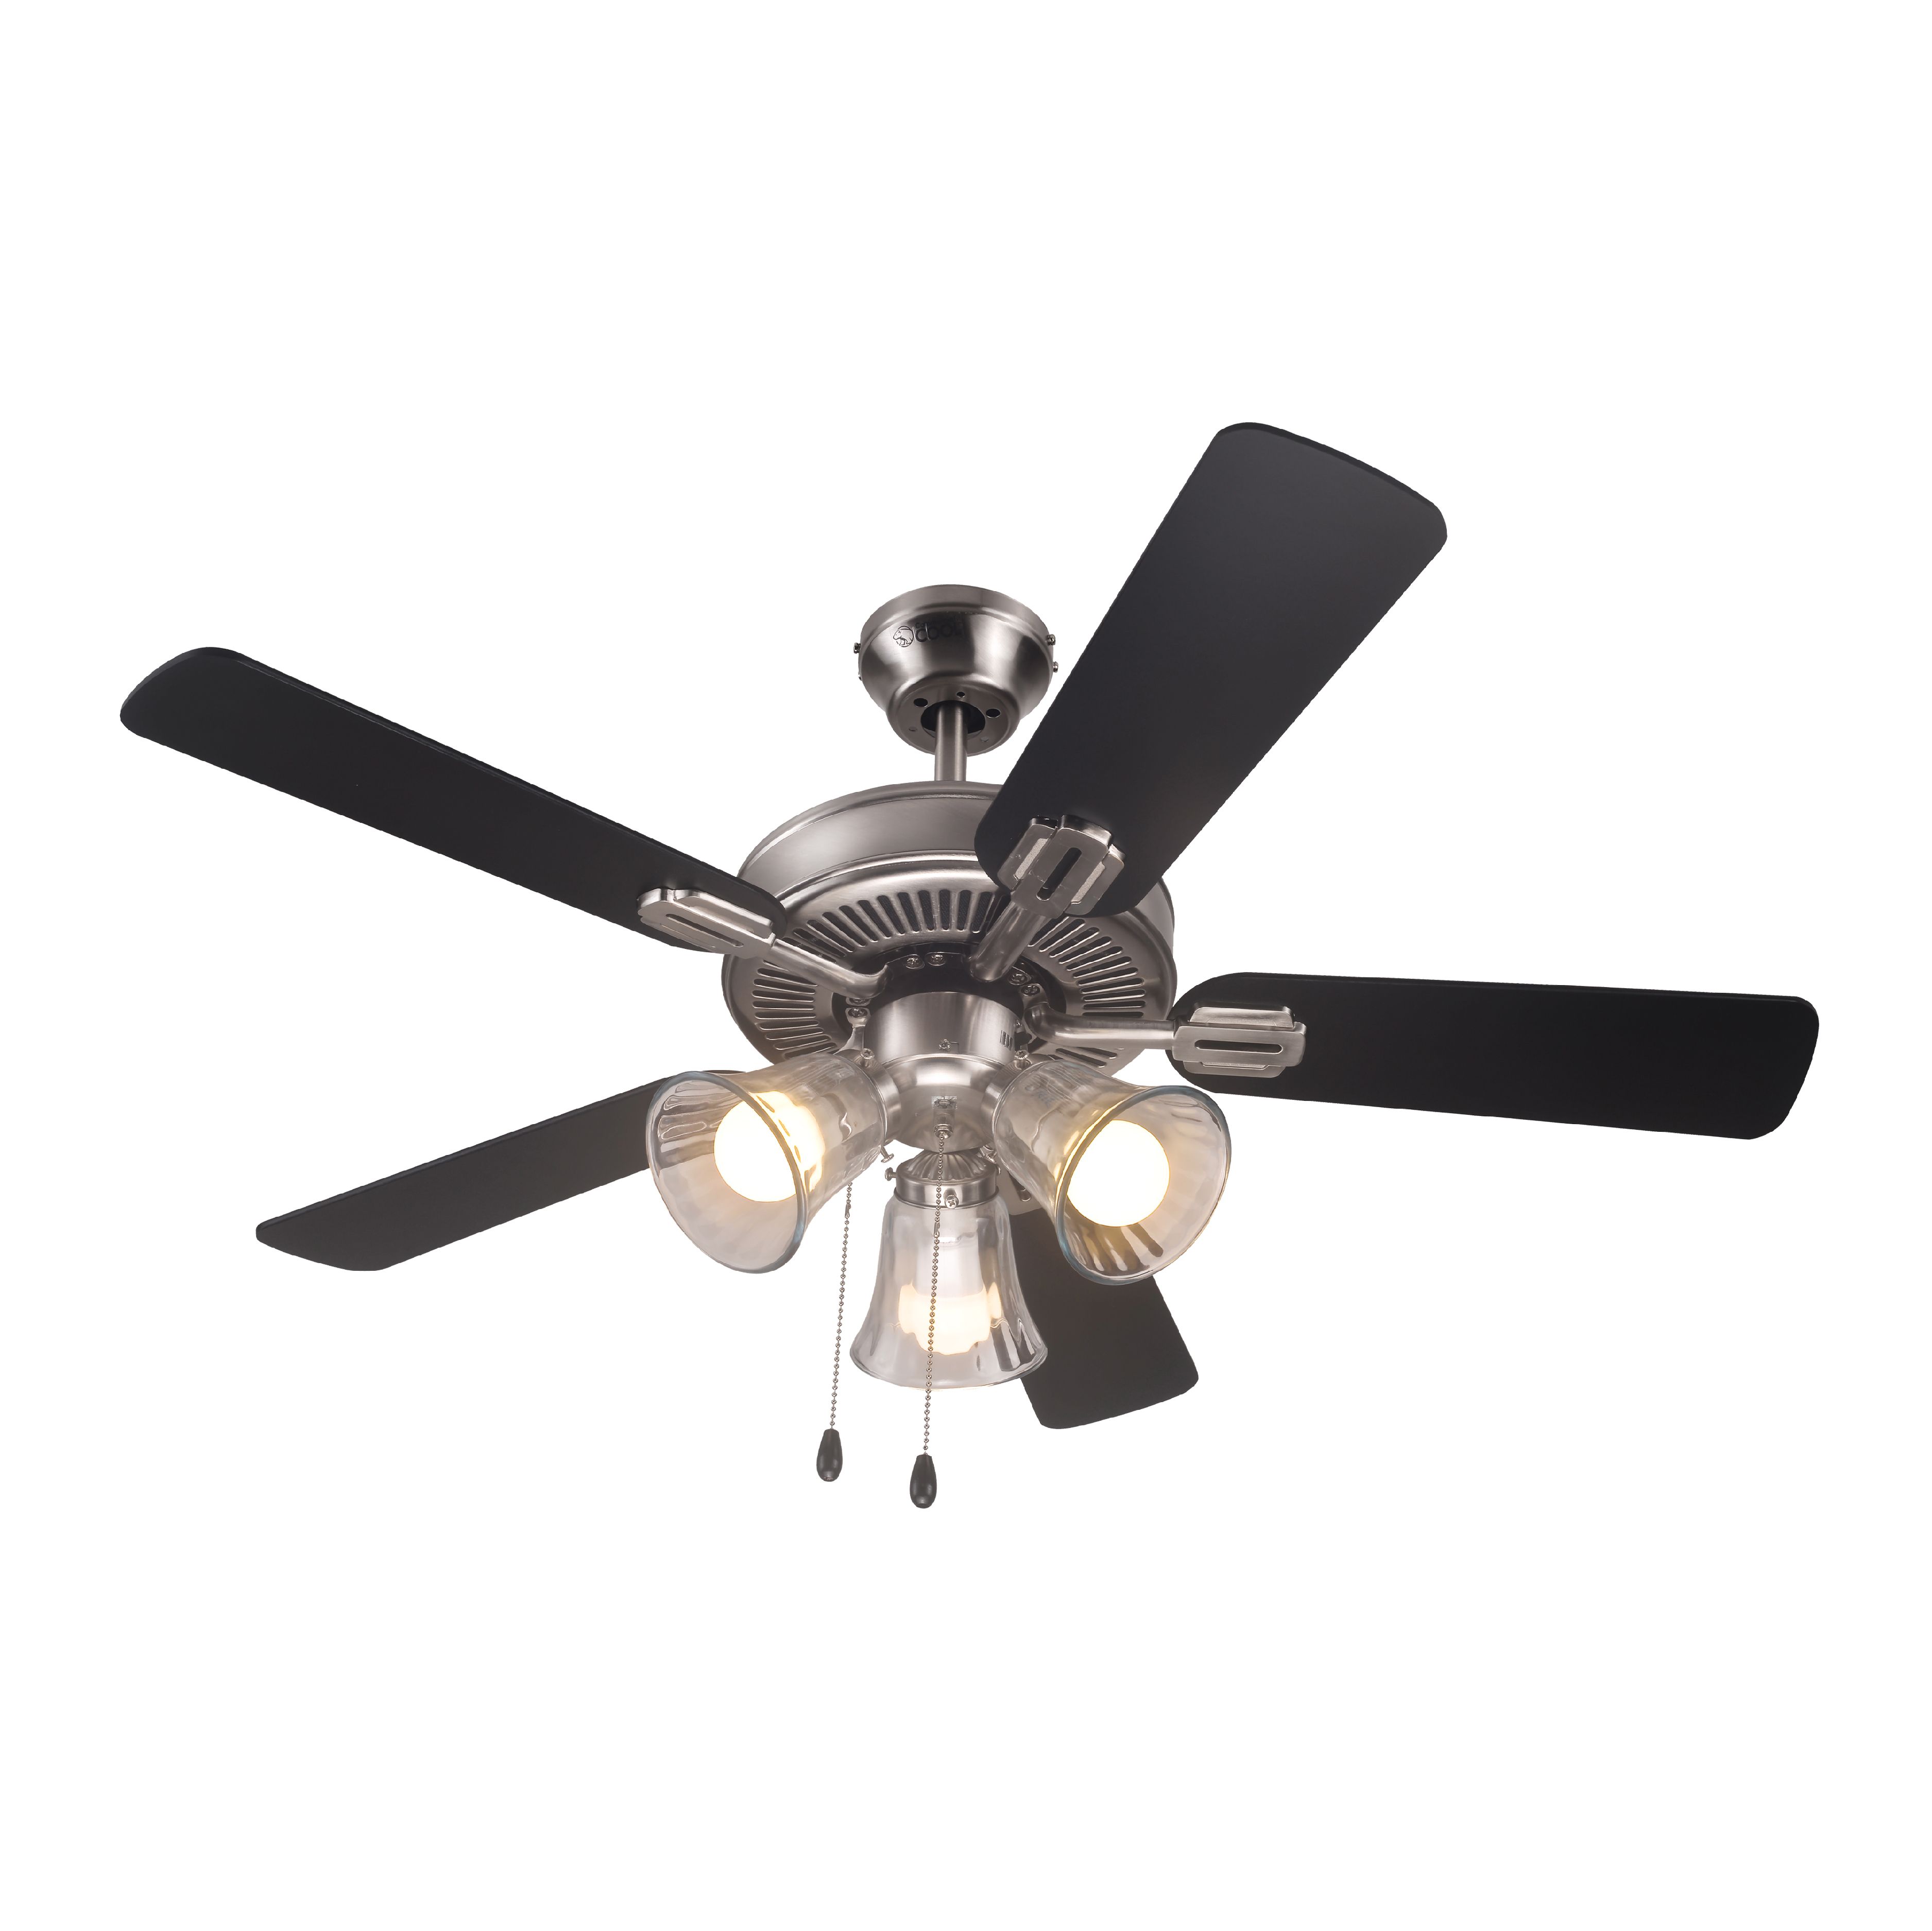 Black & Decker Ceiling Fan Brush Nickel 52 in. Cooling Fan with